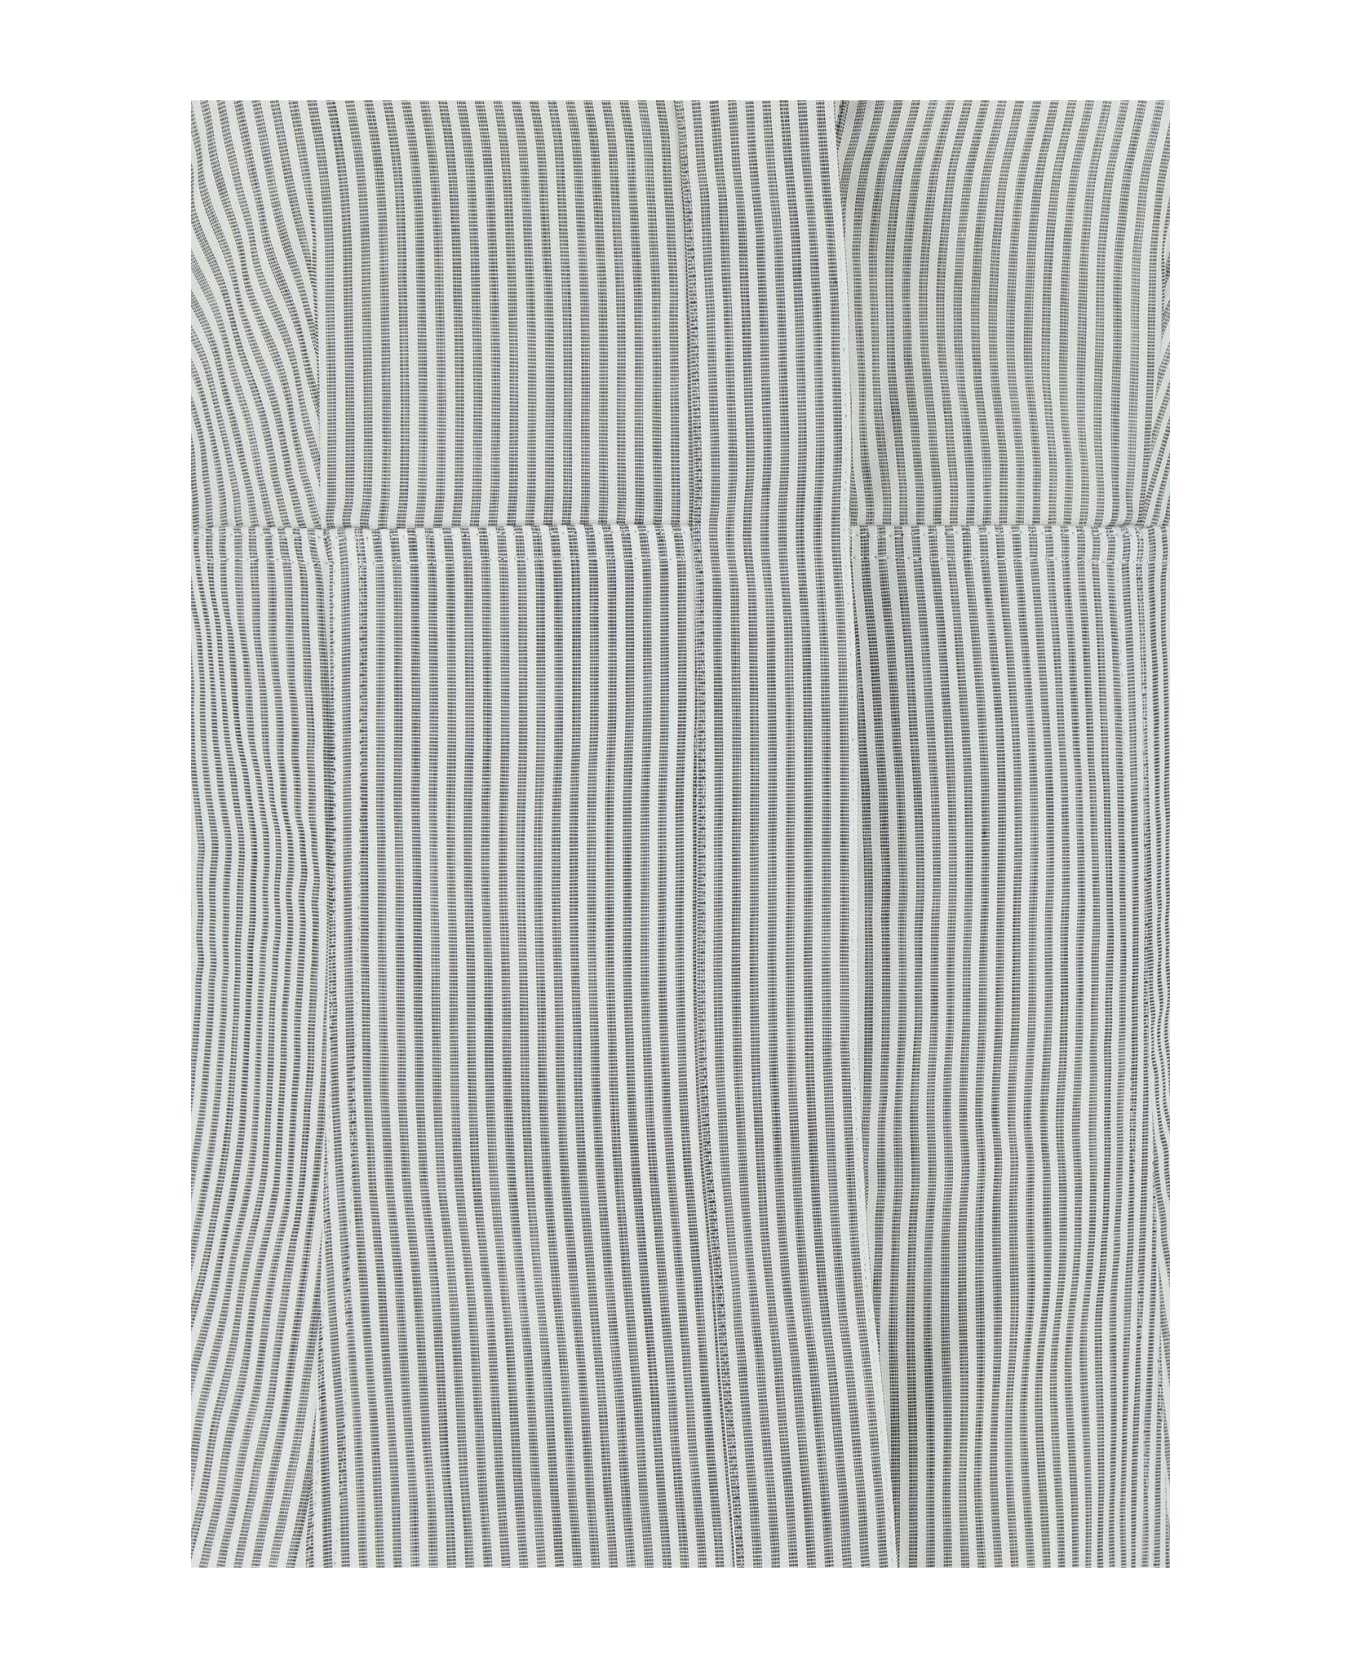 Fendi Embroidered Cotton Shirt - MULTICOLOR